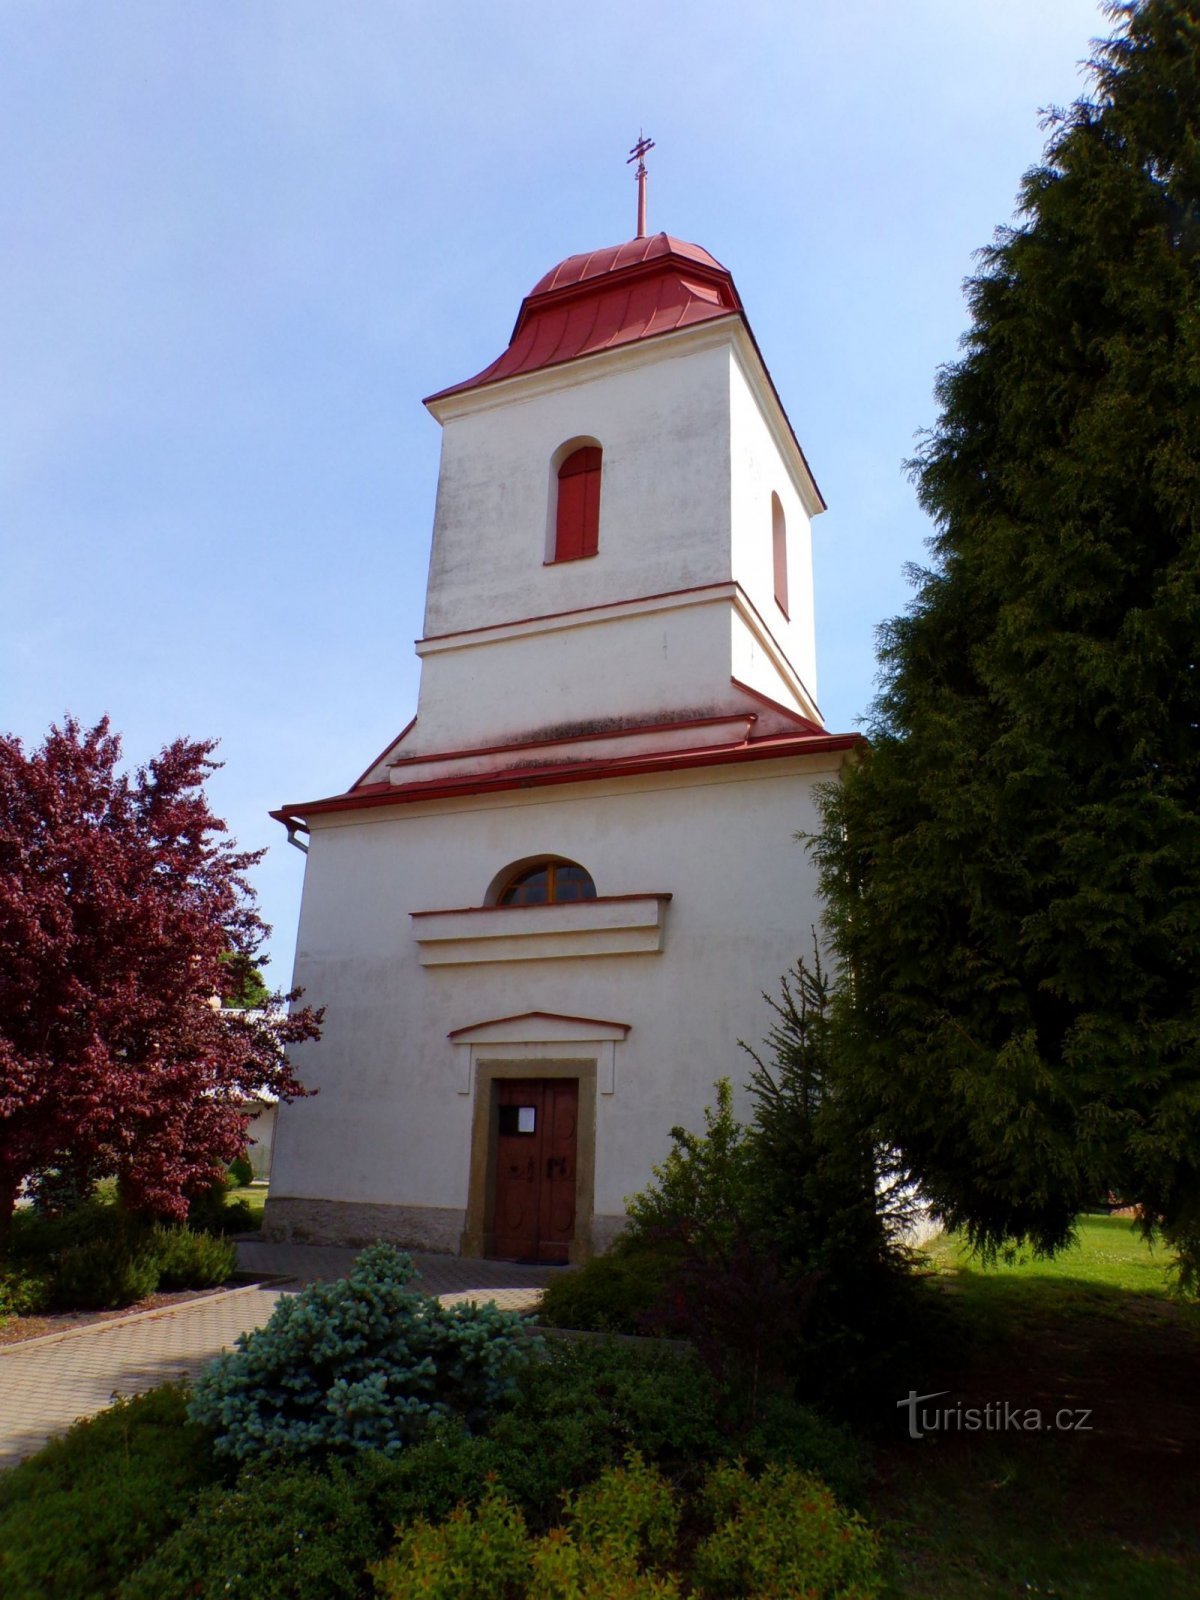 圣教堂施洗约翰 (Albrechtice nad Orlicí, 20.5.2022/XNUMX/XNUMX)